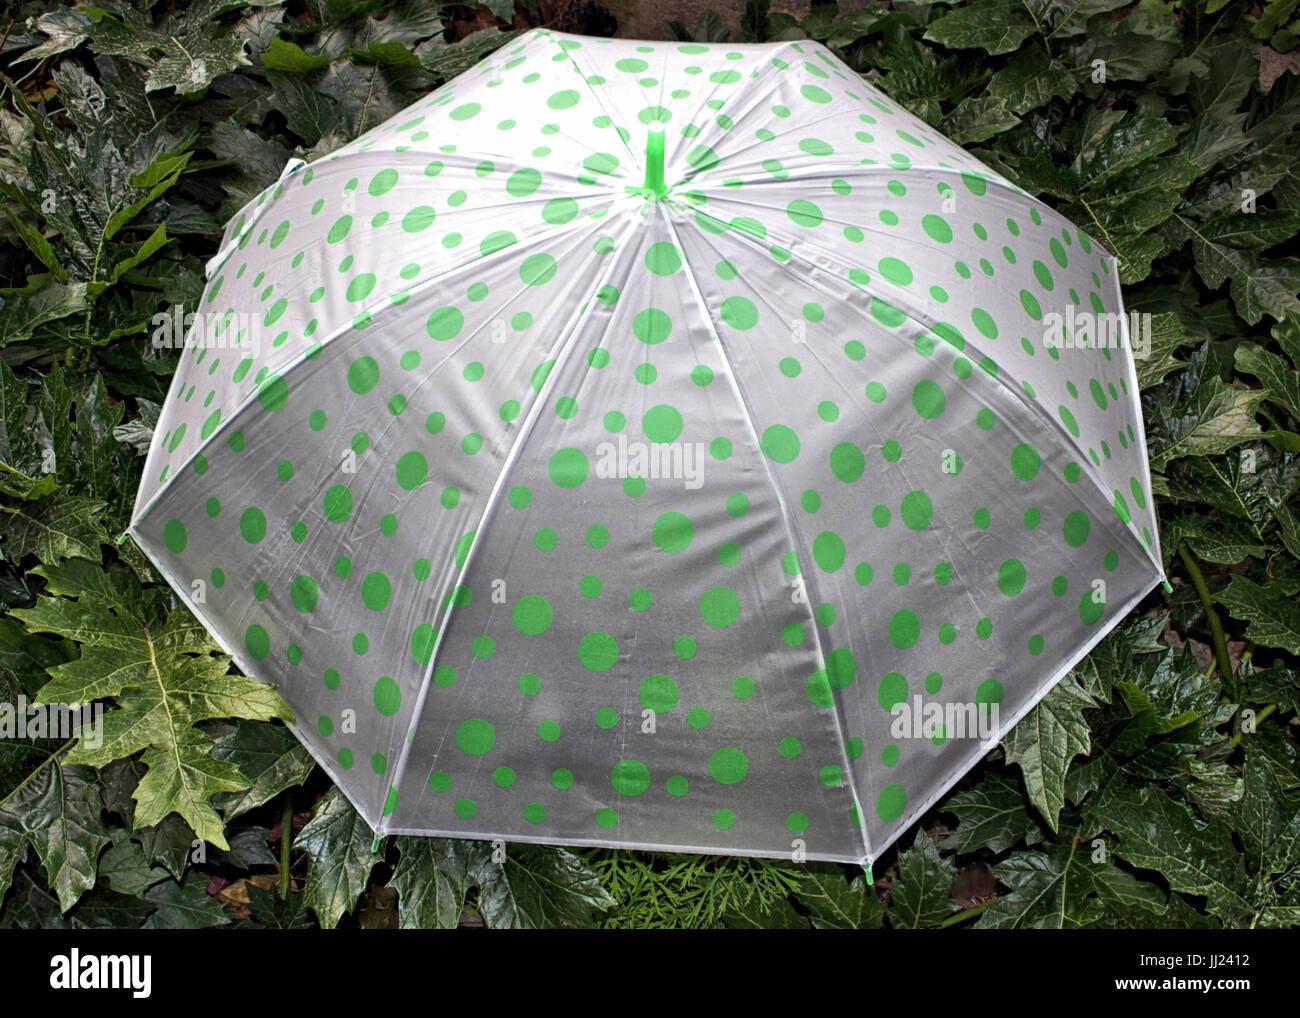 Un vert en plastique bon marché parapluie à pois fixe d'ouverture contre  les feuilles vertes Photo Stock - Alamy